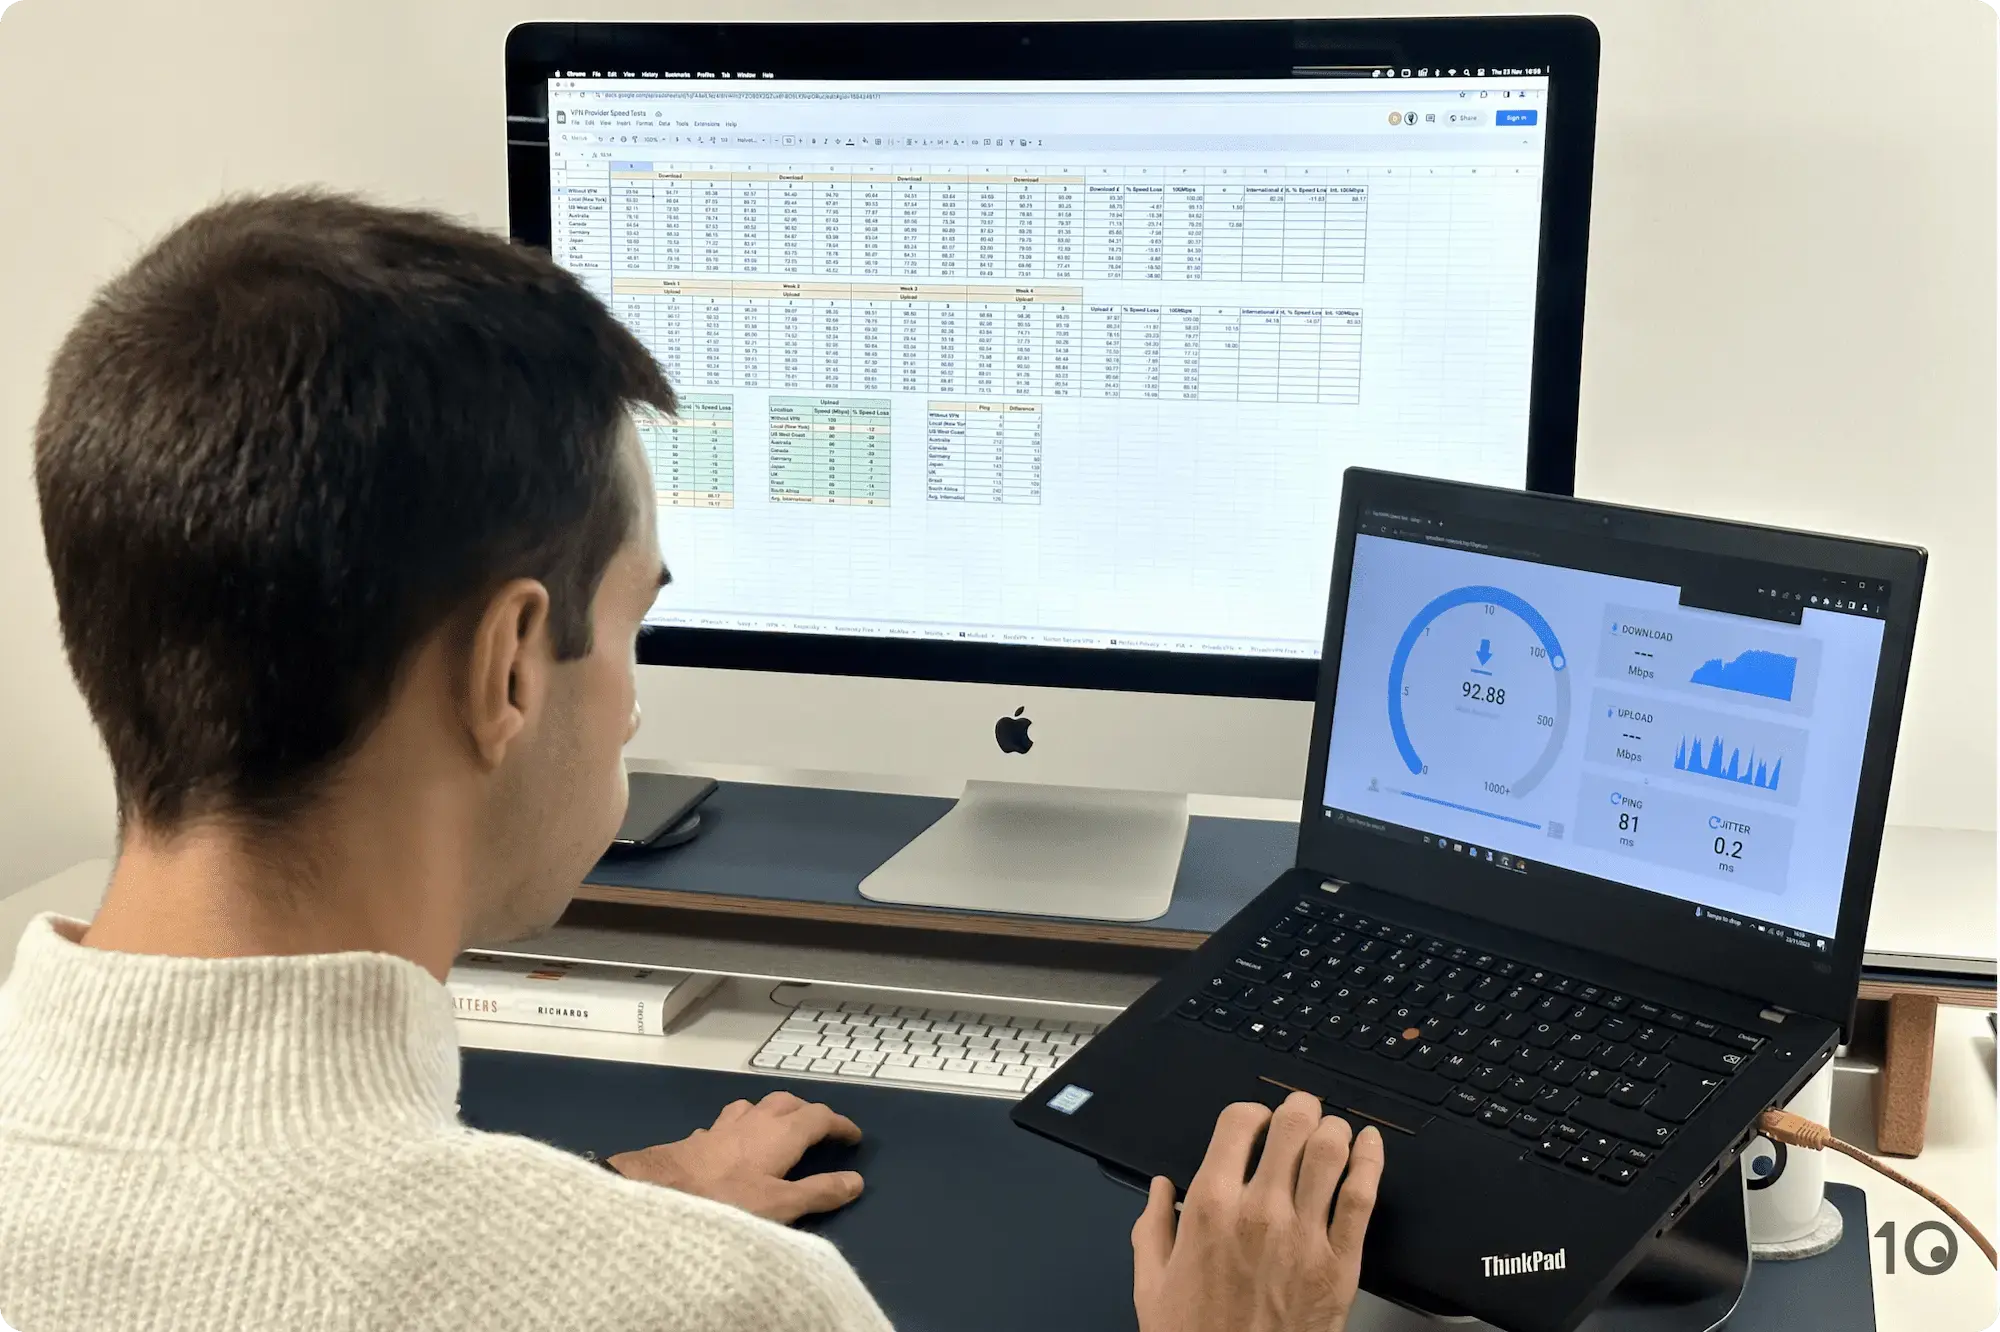 Un homme assis à un bureau teste les performances de vitesse d'un VPN sur un ordinateur portable et analyse une feuille de calcul des résultats des tests de vitesse sur un iMac.